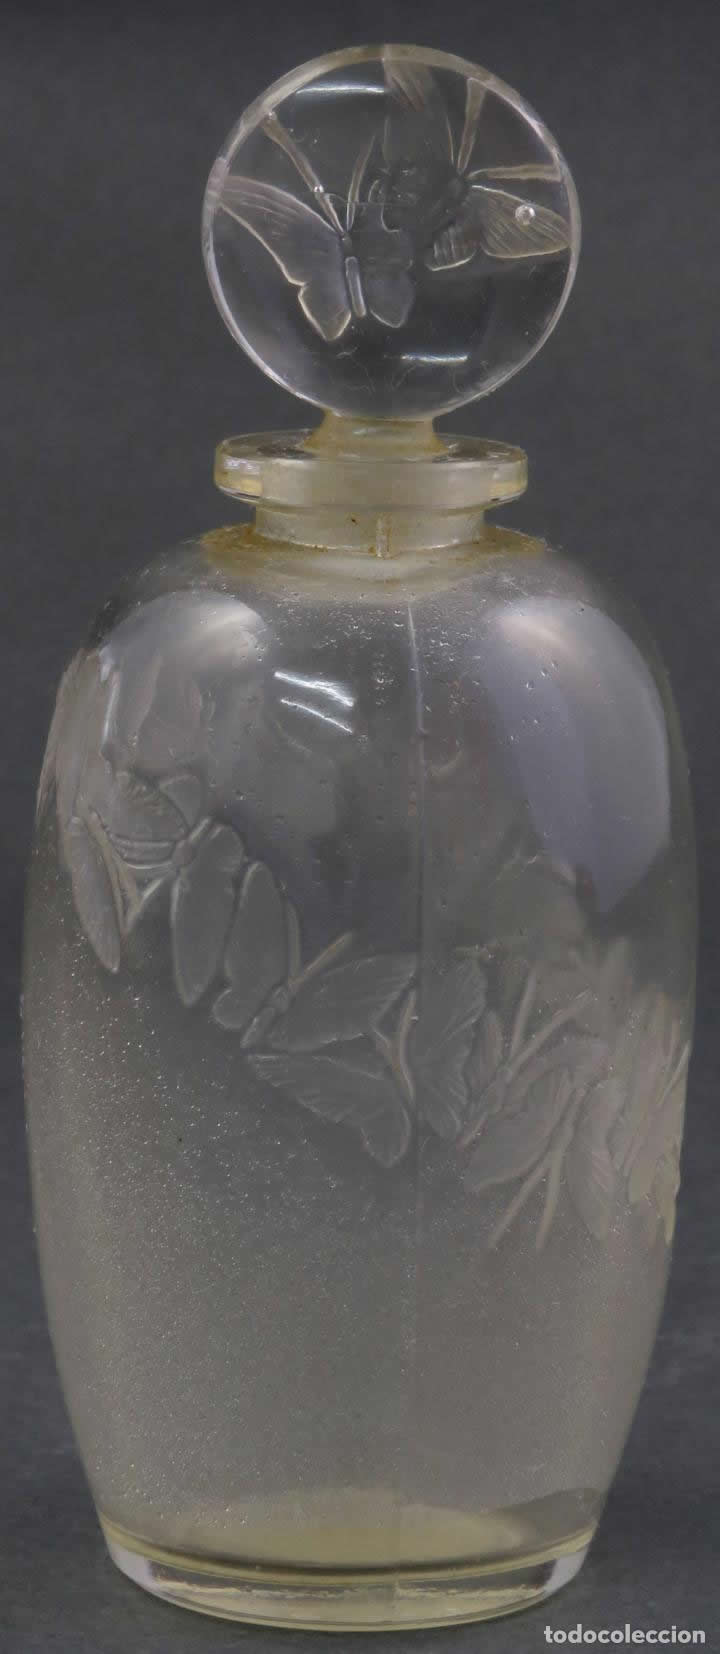 R. Lalique L'Anneau Merveilleux-2 Perfume Bottle 3 of 3